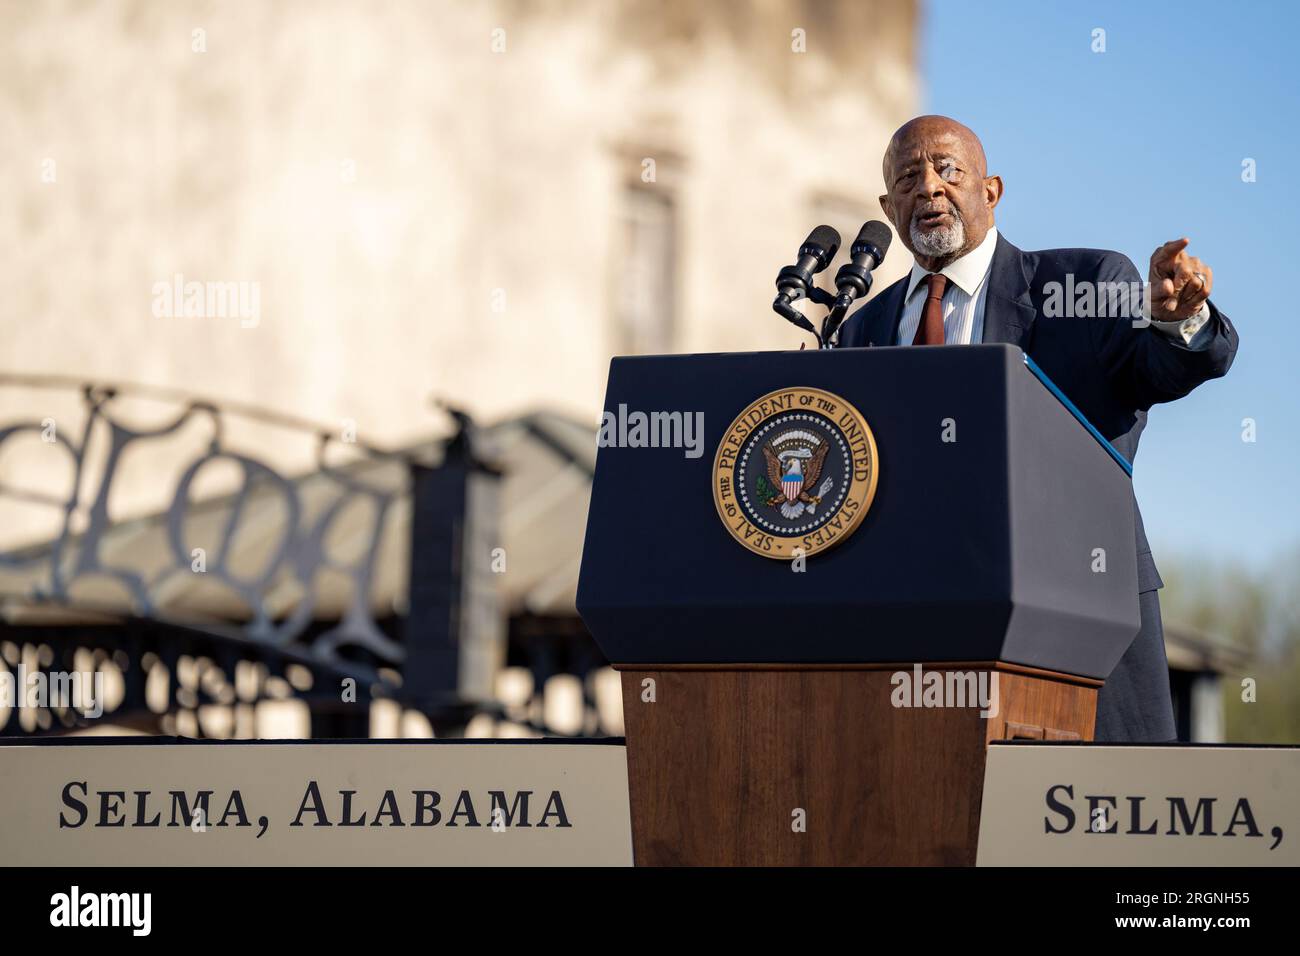 Reportage : visite de Joe Biden à Selma Alabama (2023) - Charles Mauldin, leader étudiant de la marche Bloody Sunday le 7 mars 1965, présente le président Joe Biden lors d'un événement pour commémorer le 58e anniversaire de la marche des droits civiques au pont Edmund Pettus, dimanche 5 mars 2023, à Selma, Alabama. Banque D'Images